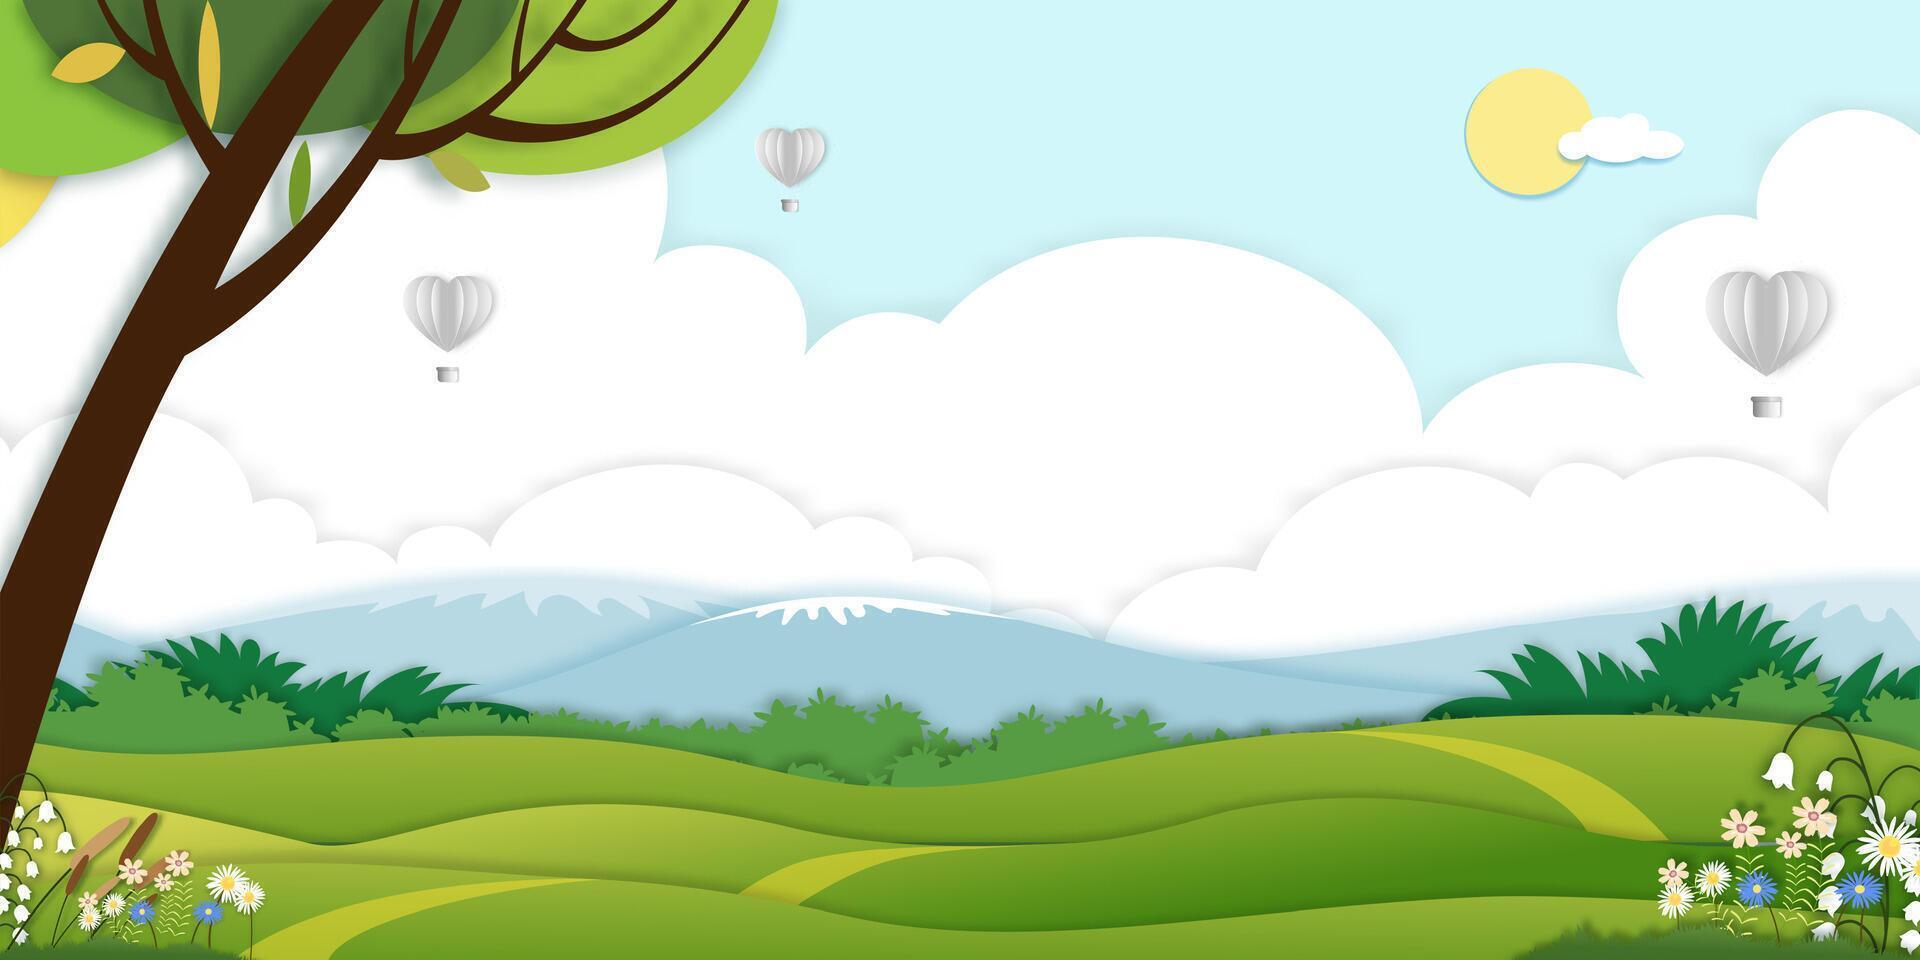 printemps vert champ paysage avec montagne,nuage couche, chaude air des ballons cœur en volant sur bleu ciel arrière-plan, panorama papier art été rural la nature avec vert herbe land.cartoon vecteur illustration